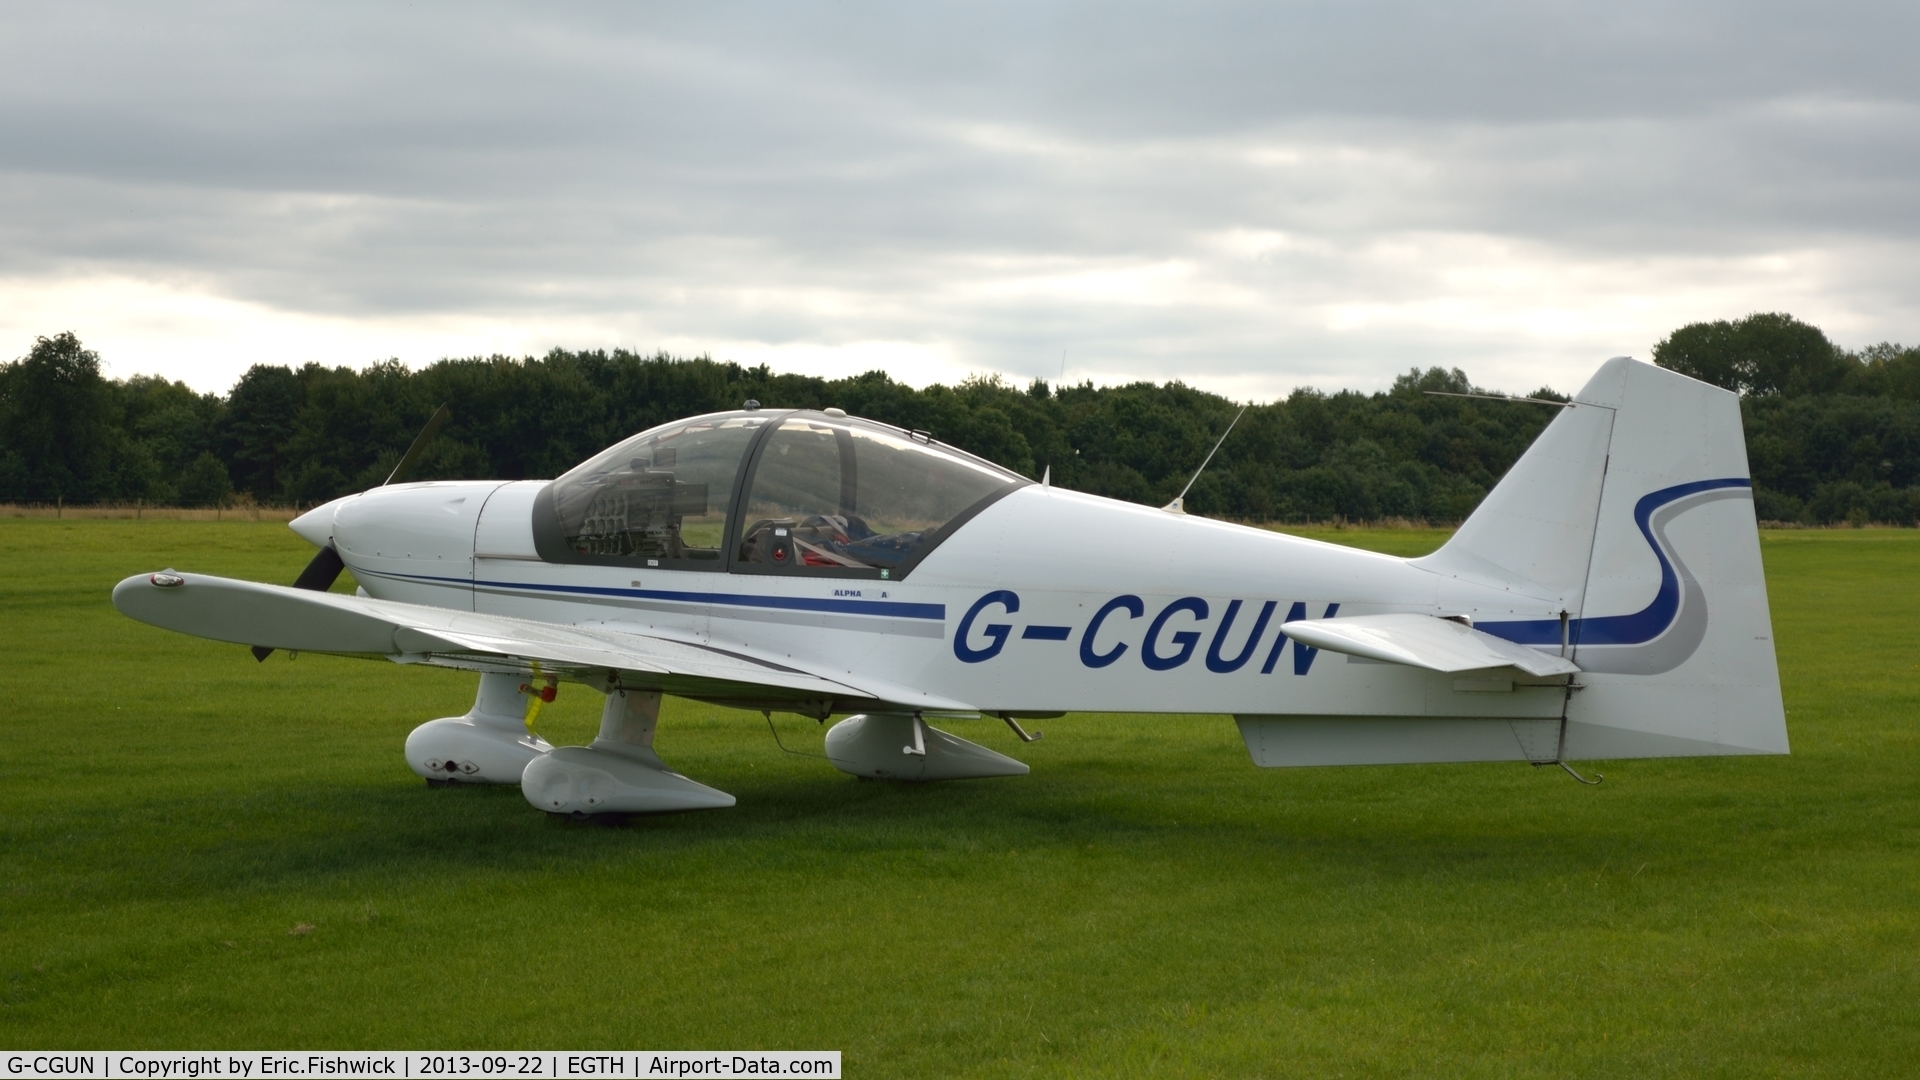 G-CGUN, 2007 Alpha R2160 C/N 160A-07011, 1. G-CGUN at Shuttleworth Uncovered Air Display, Sept. 2013